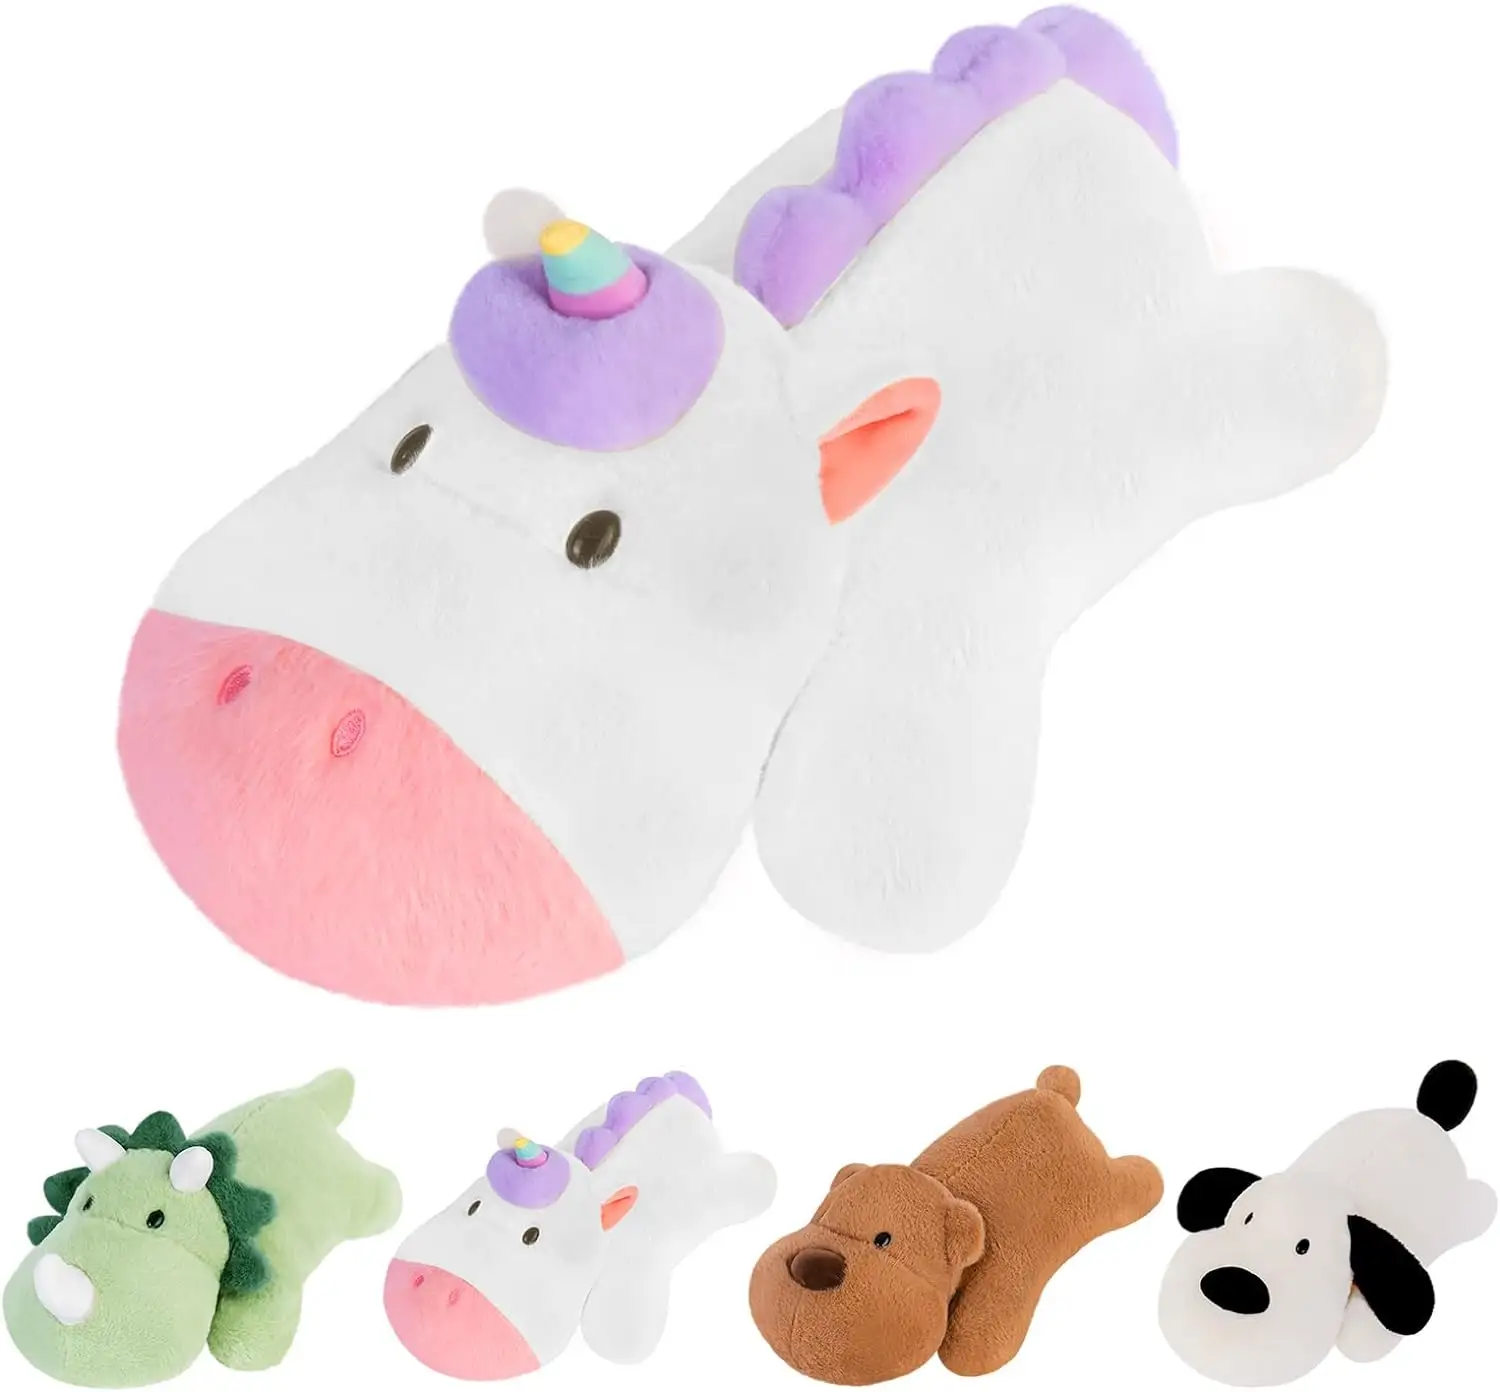 Sıcak satış Kawaii sevimli pembe beyaz gökkuşağı yalan Unicorn yumuşak yastık oyuncak kanatları ile dolması tek boynuzlu at pelüş oyuncak kız hediye olarak